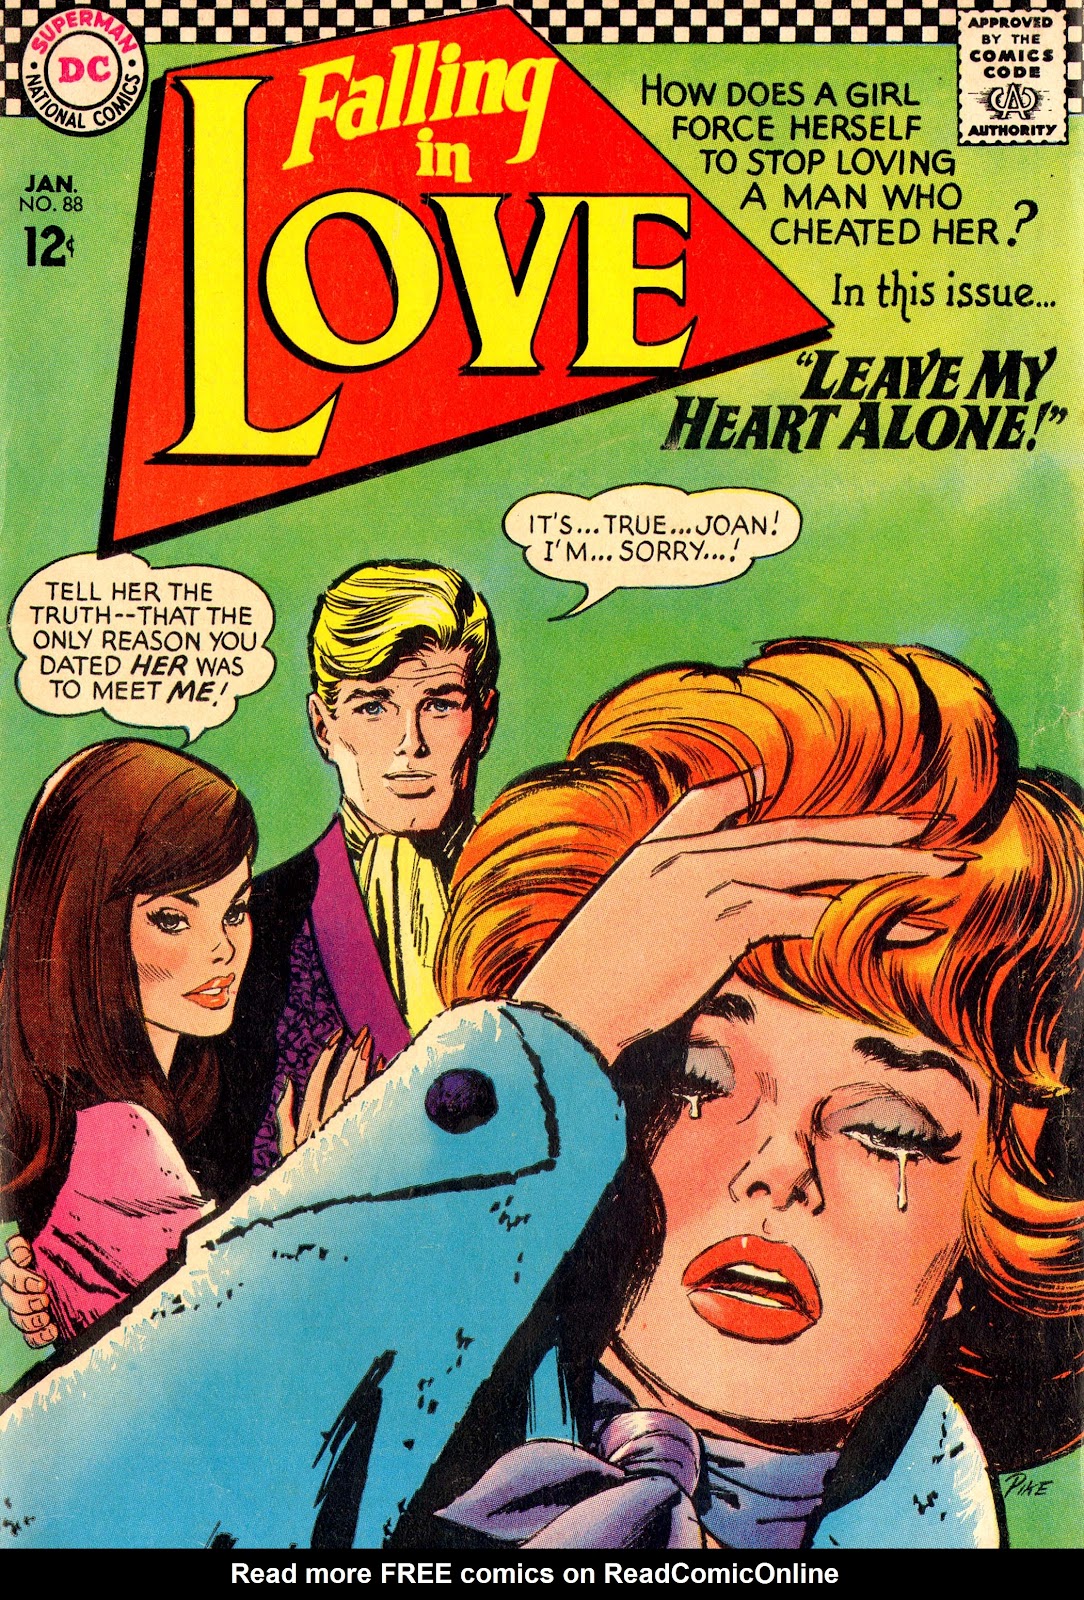 Issue love. Falling in Love комикс. Комиксы 1967. Pcmaniac88 комиксы. Love 88.